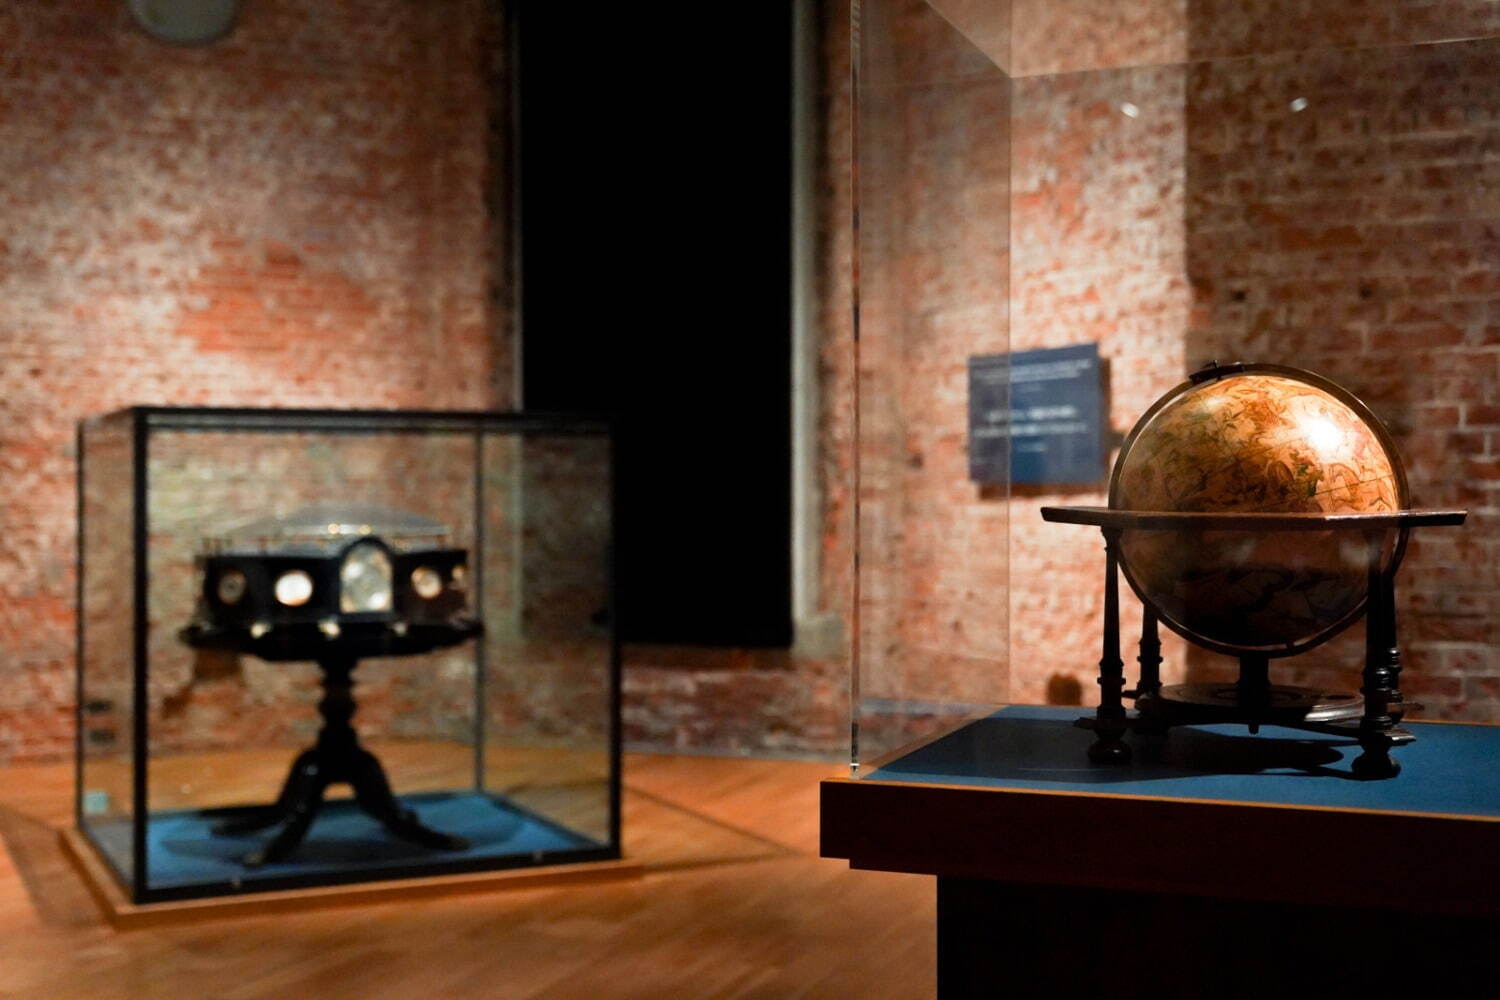 ヨハン・ガブリエル・ドッペルマイヤー 「天球儀」 ニュルンベルク、1728年 大英図書館蔵
ジェームズ・シモンズ、マルビー＆カンパニー製 「大太陽系儀」 ロンドン、1842年 国立海事博物館(ロンドン)蔵